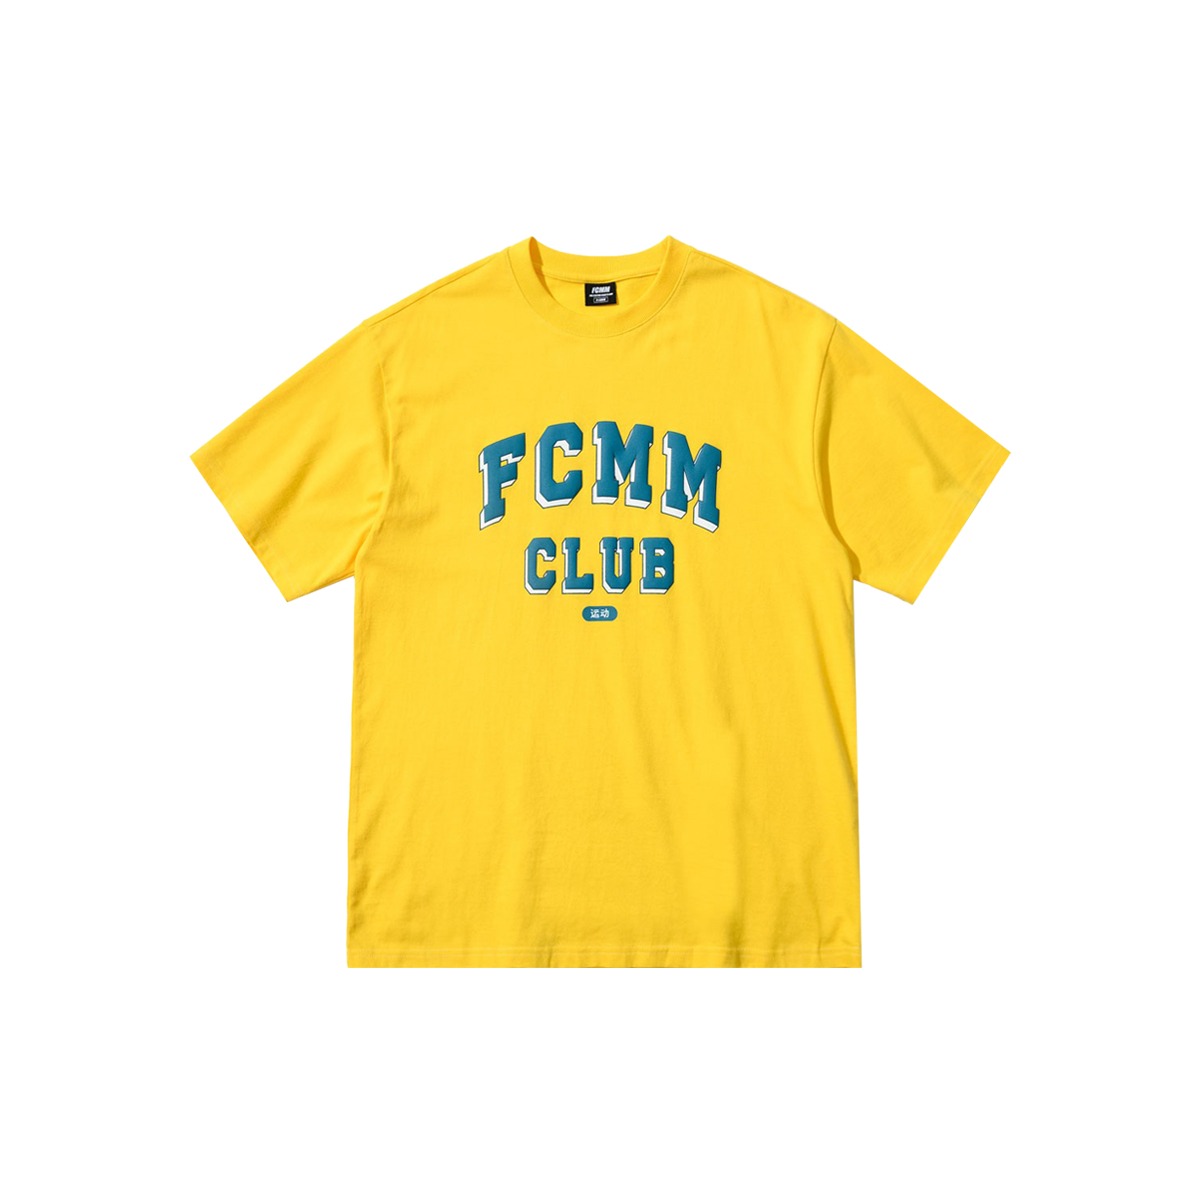 스포츠 클럽 티셔츠 - 옐로우